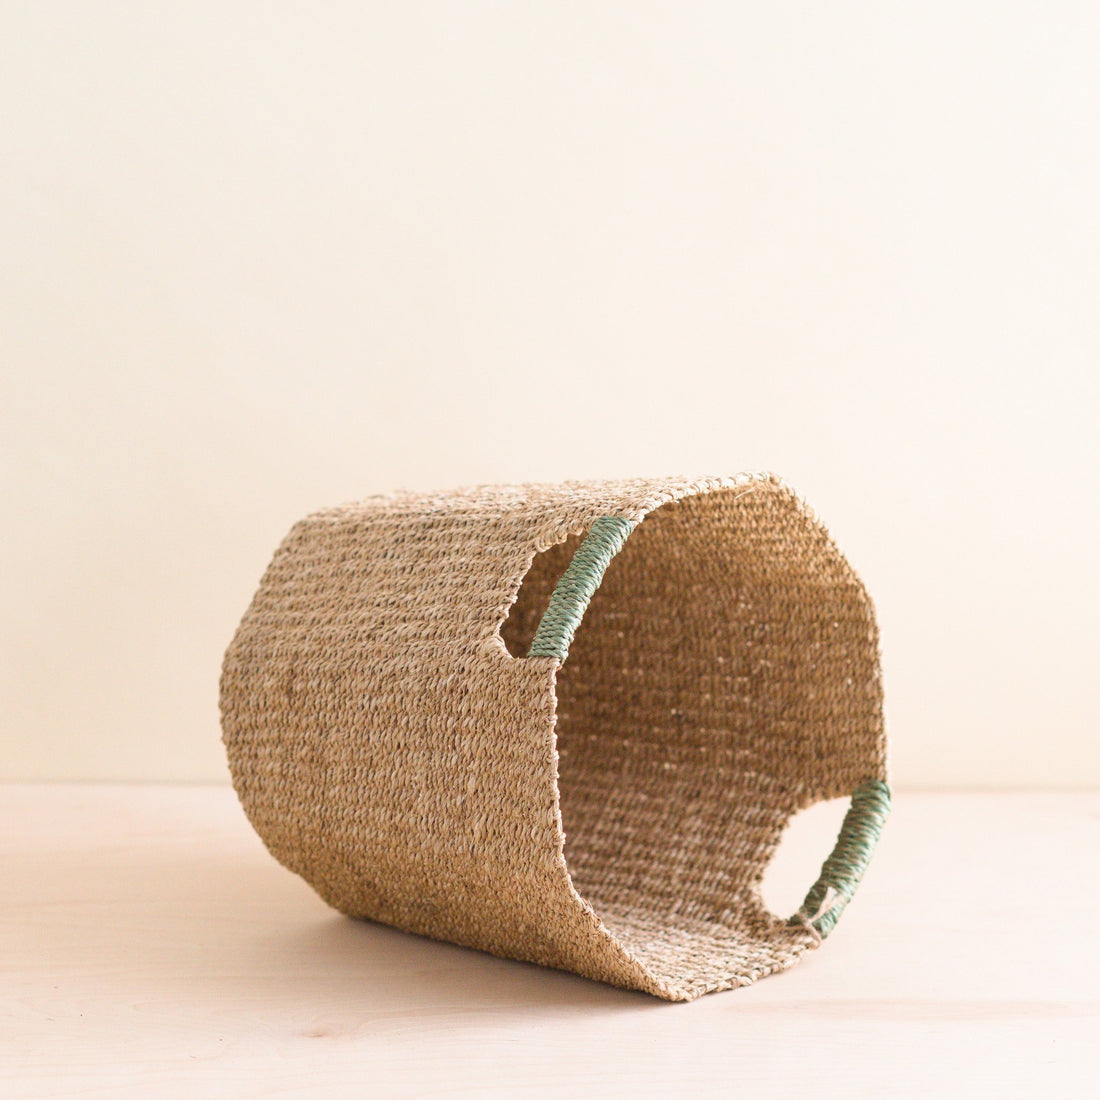 Baskets - Natural Octagon Basket with Sage Handle - Octagon Basket | LIKHÂ - LIKHÂ